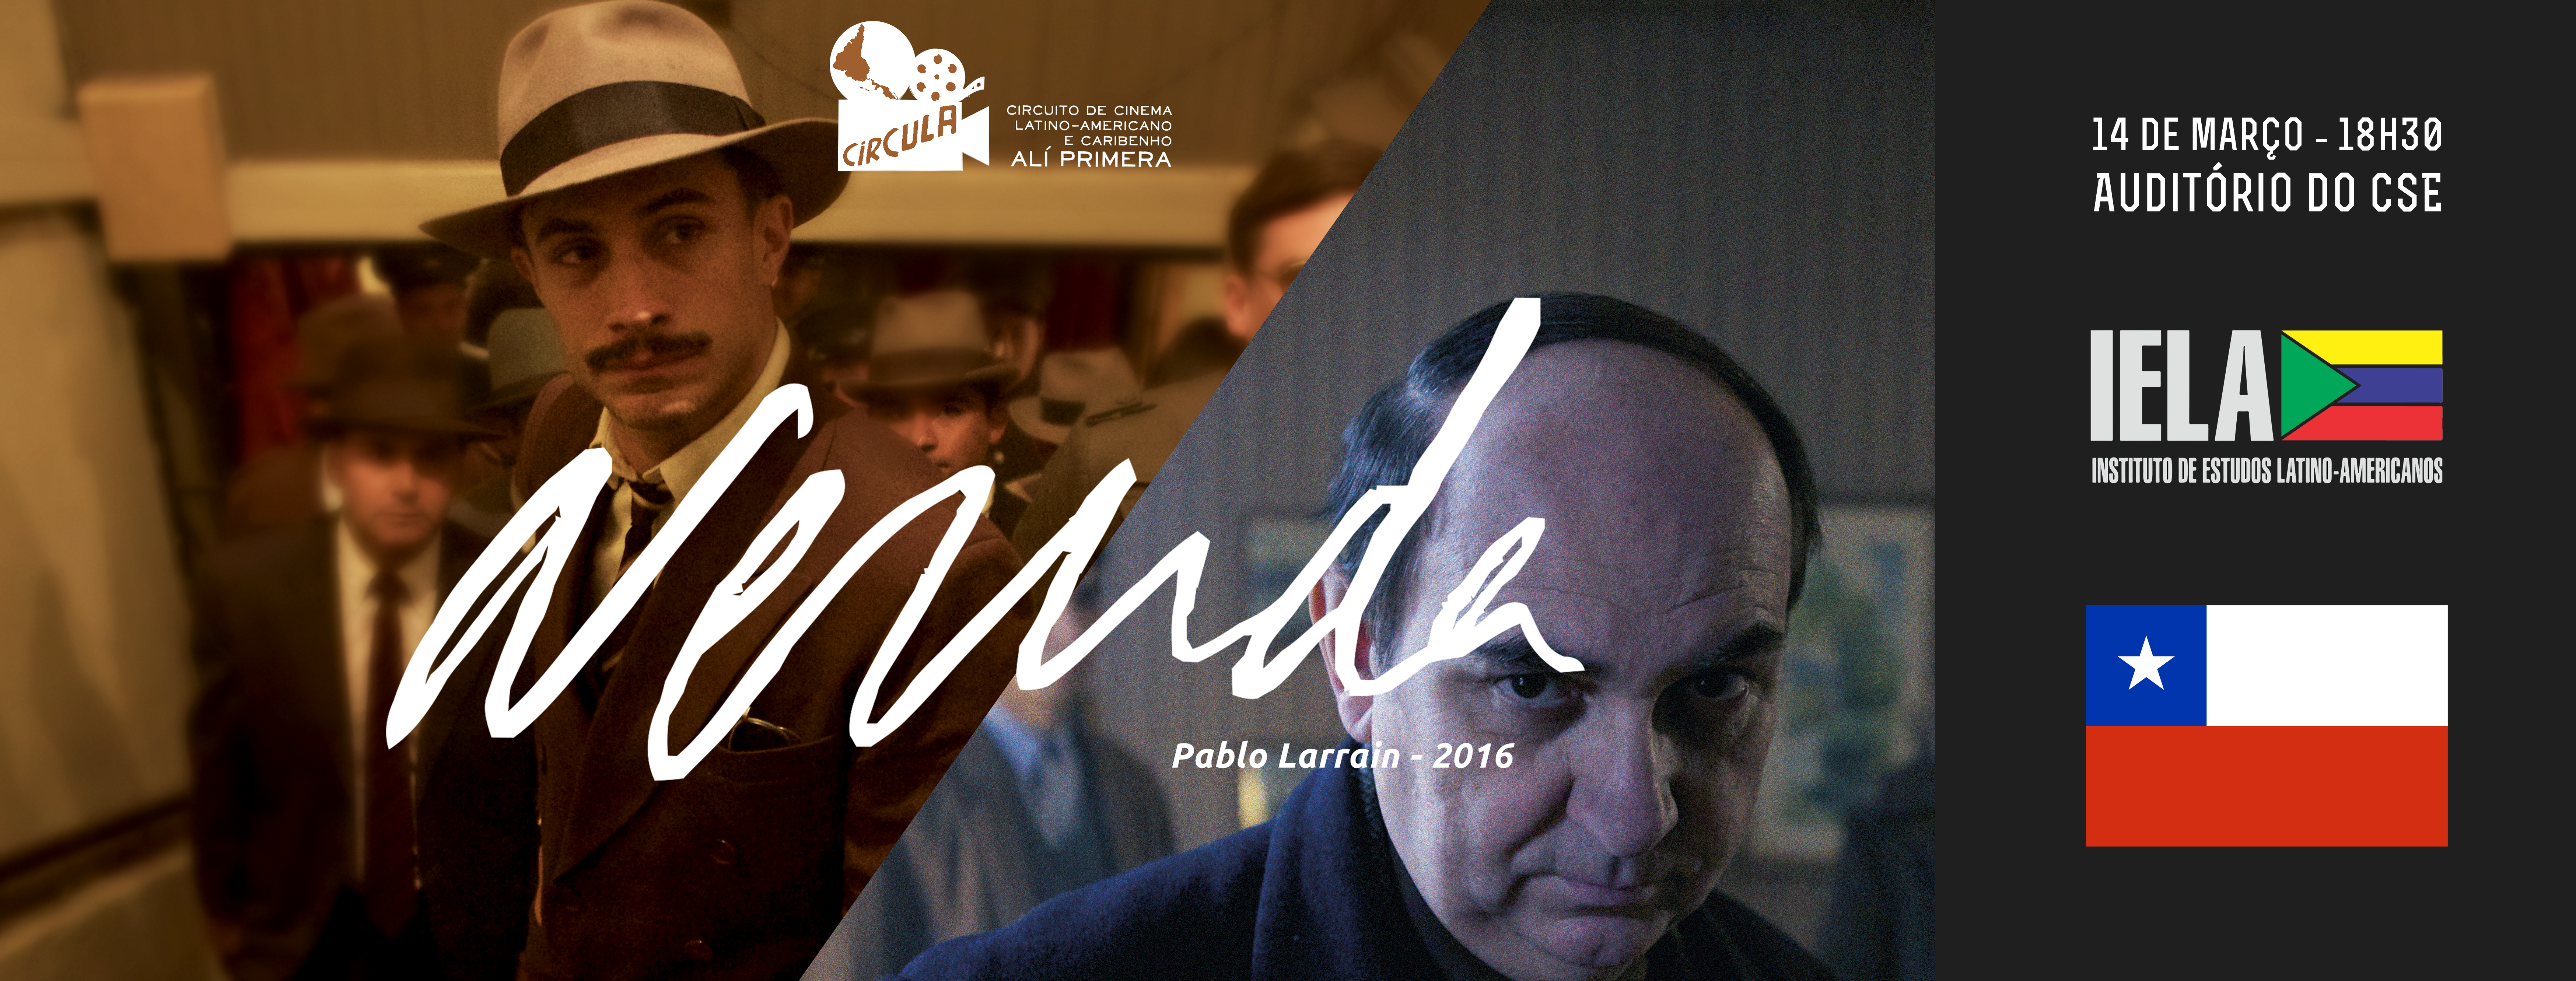 CIRCULA exibe filme sobre exílio de Pablo Neruda